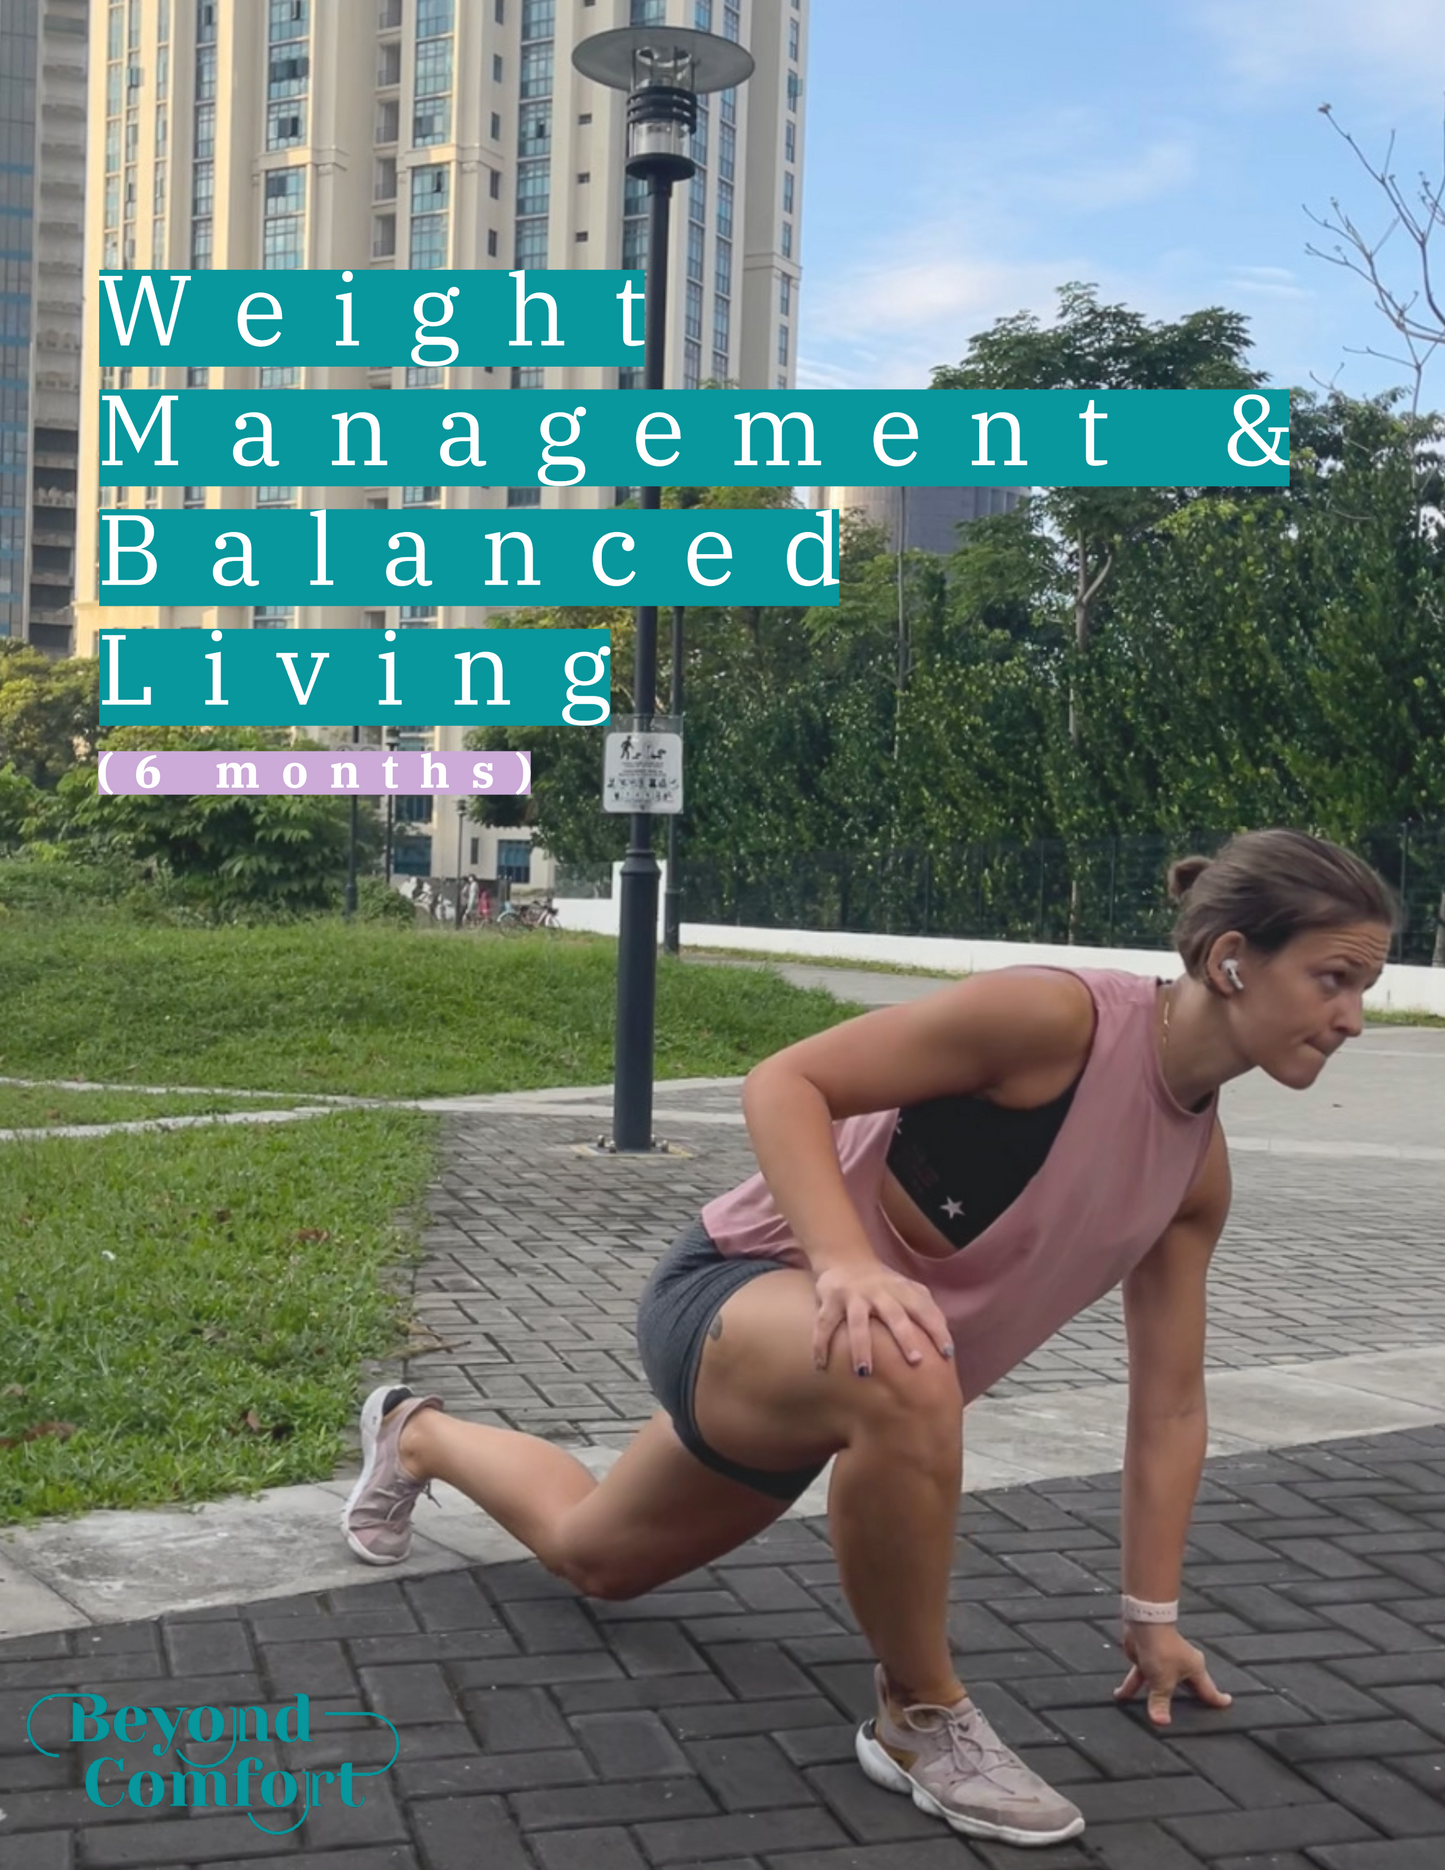 Weight Management & Balanced Living (6 months)